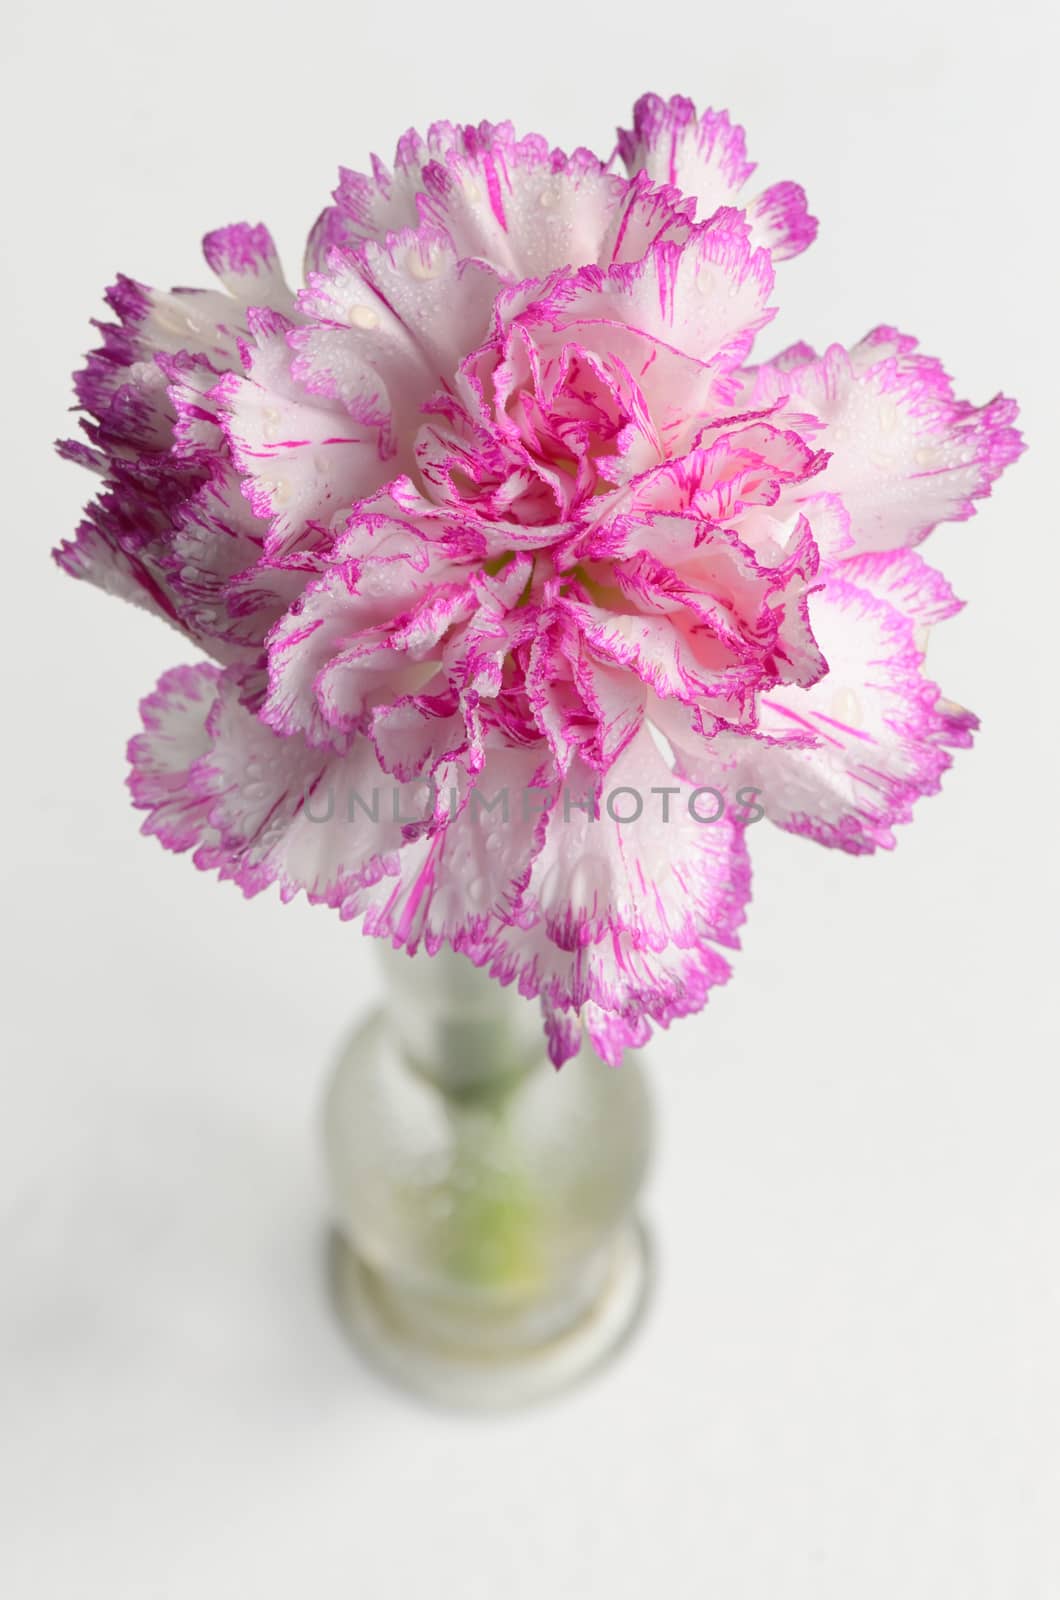 fresh carnations flower in vase